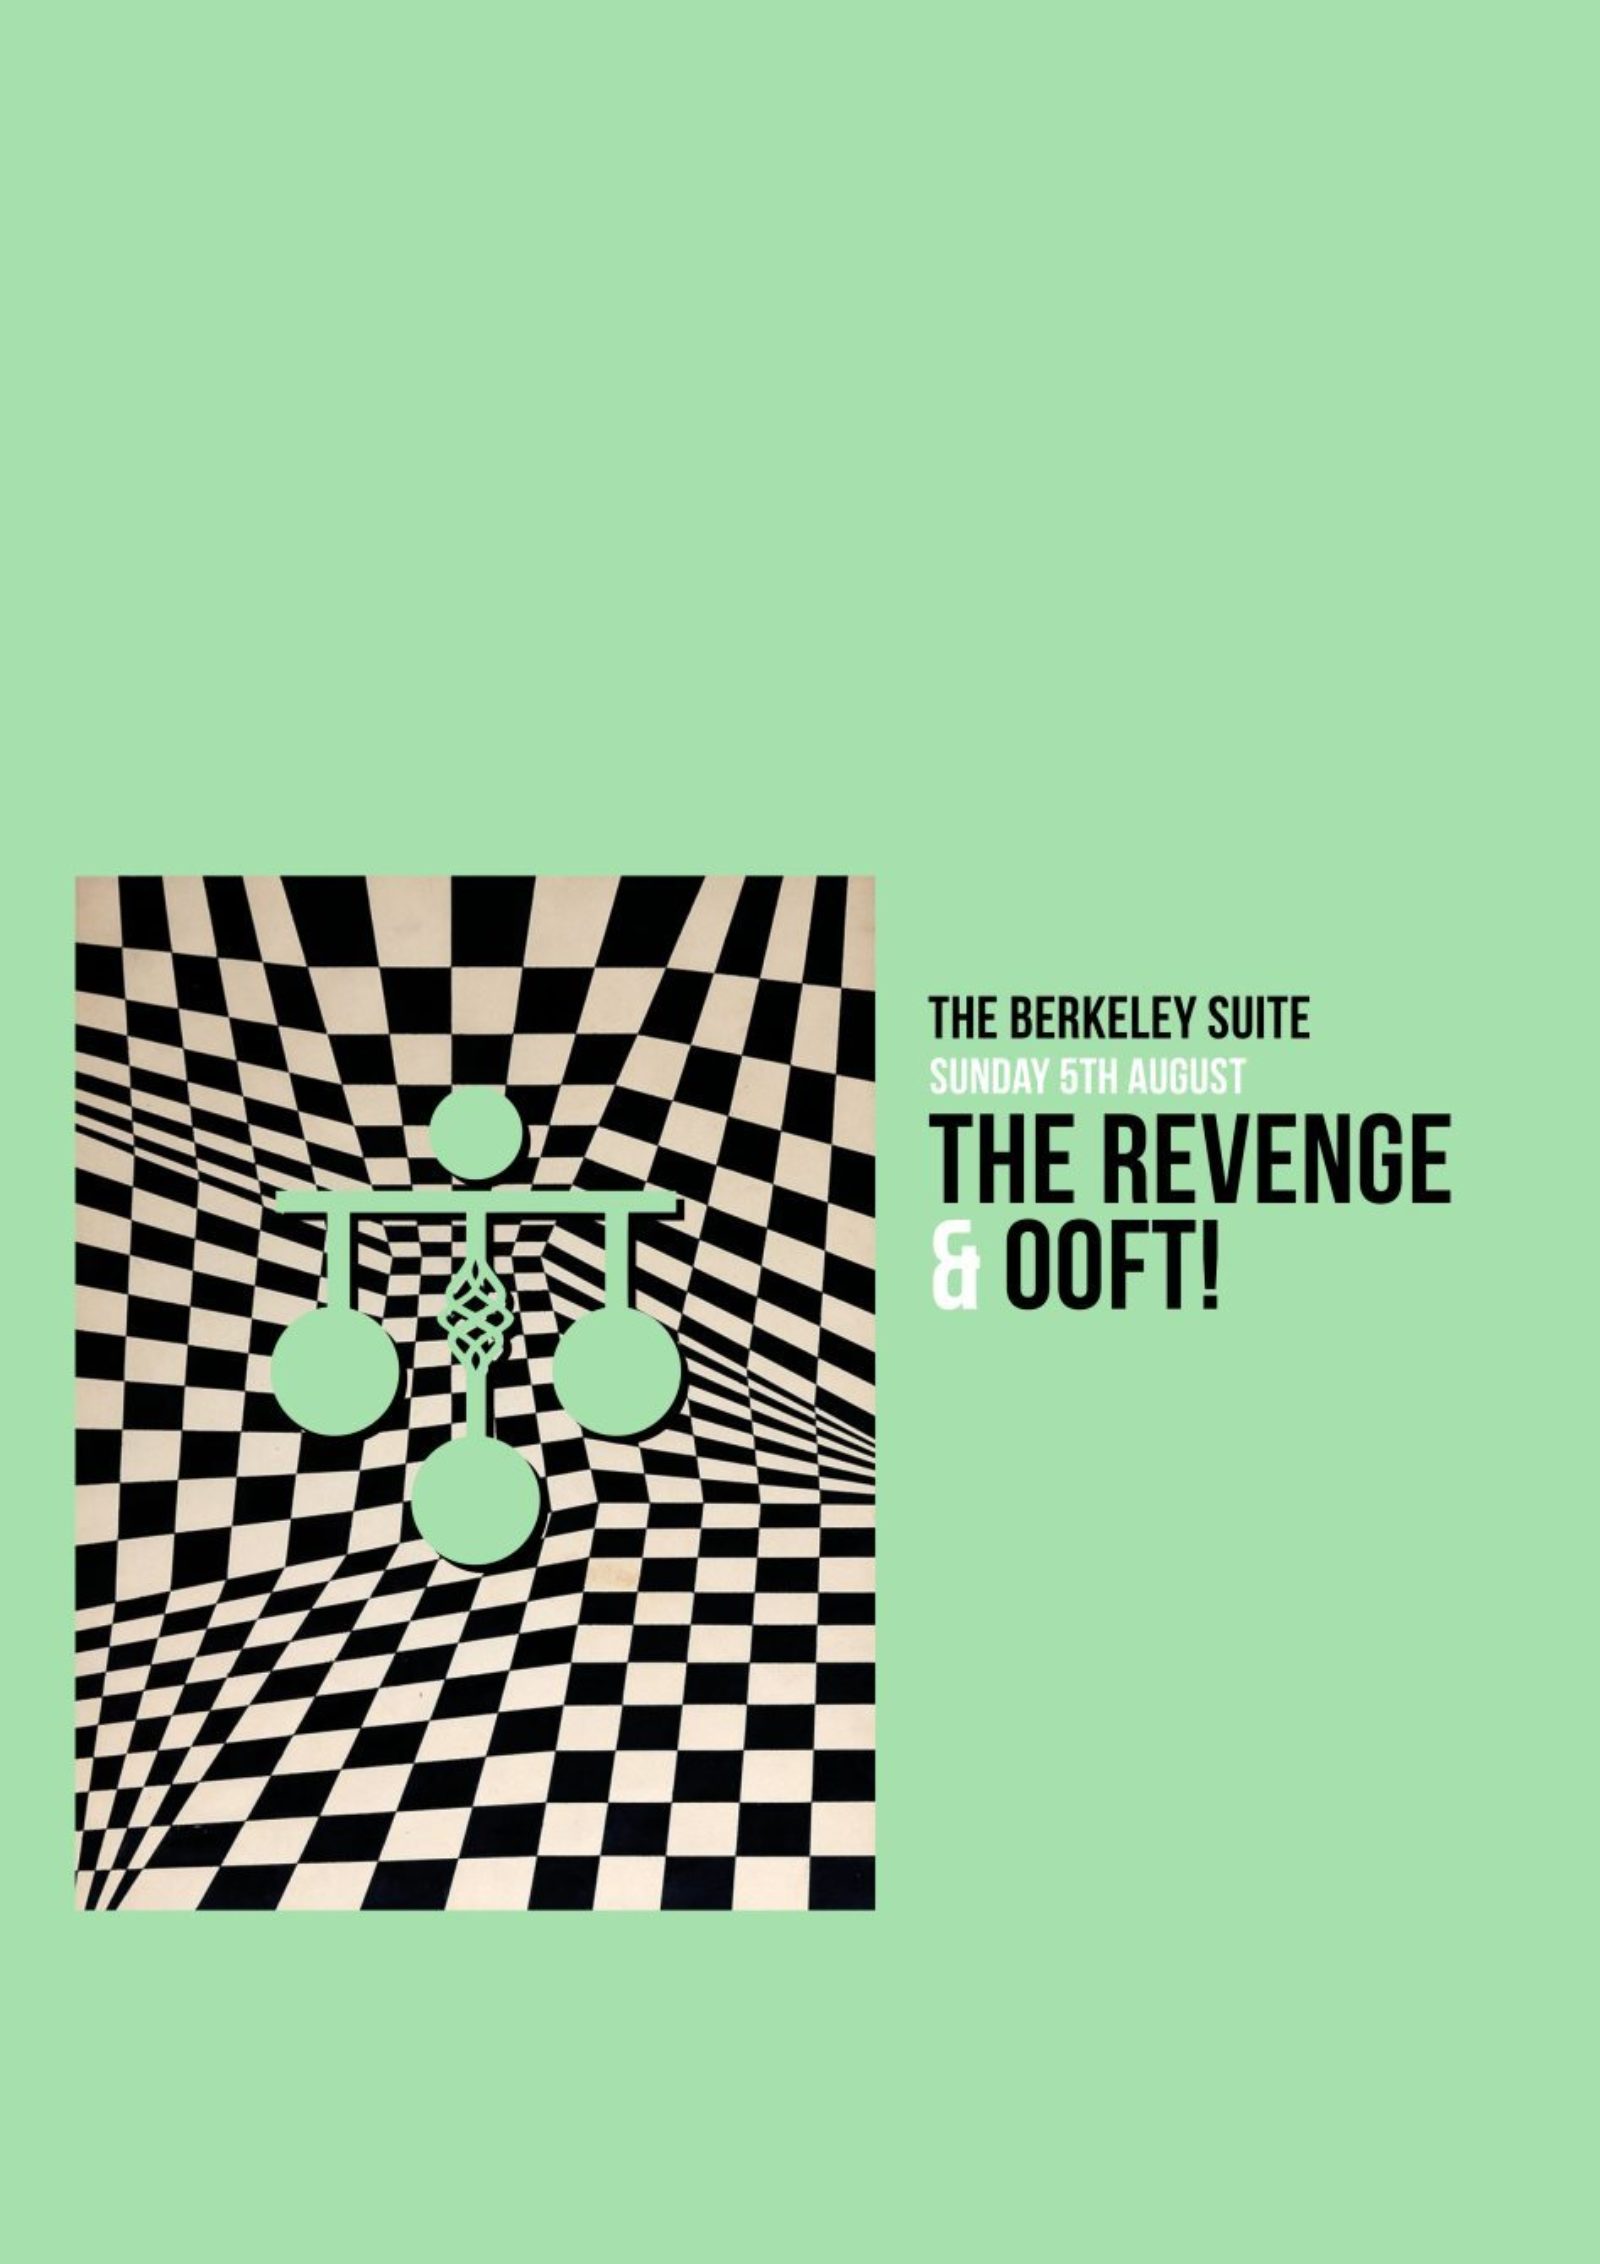 The Revenge b2b OOFT!